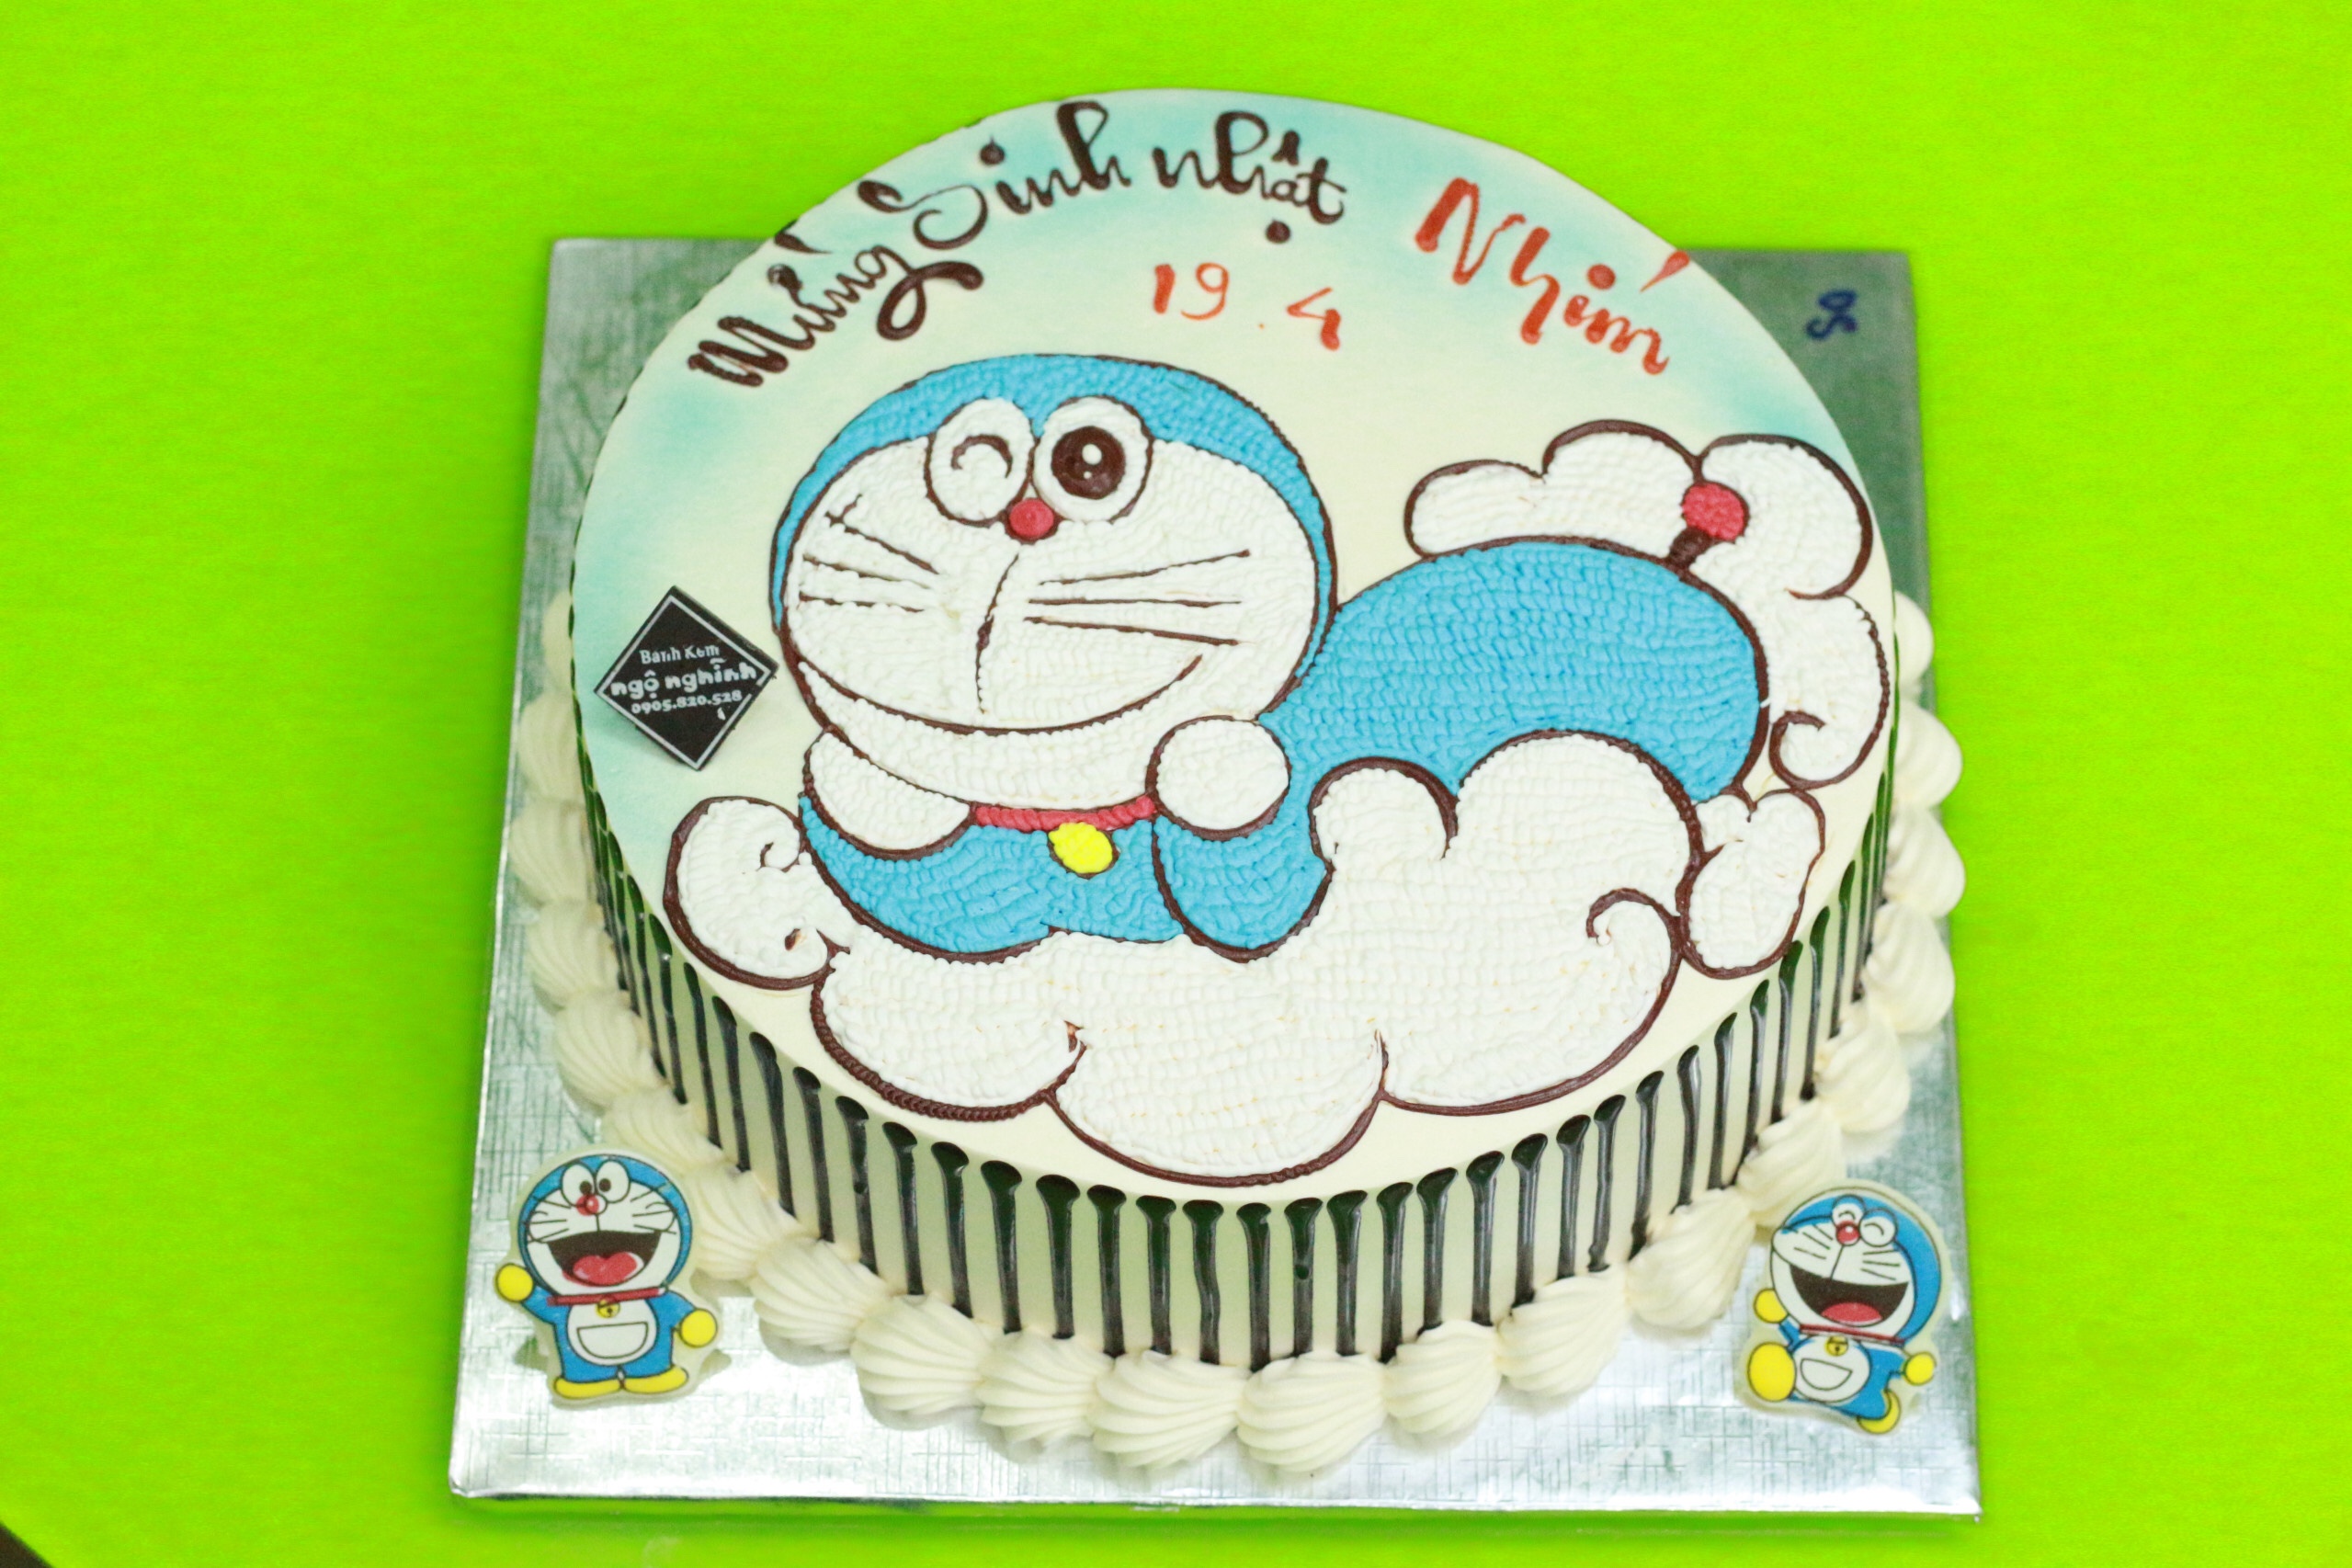 Bạn yêu thích bánh sinh nhật và Doraemon? Hãy xem bức tranh về bánh sinh nhật Doraemon được vẽ một cách tinh tế và đẹp mắt, chắc chắn sẽ khiến bạn tò mò muốn thưởng thức món bánh ngọt này ngay lập tức.